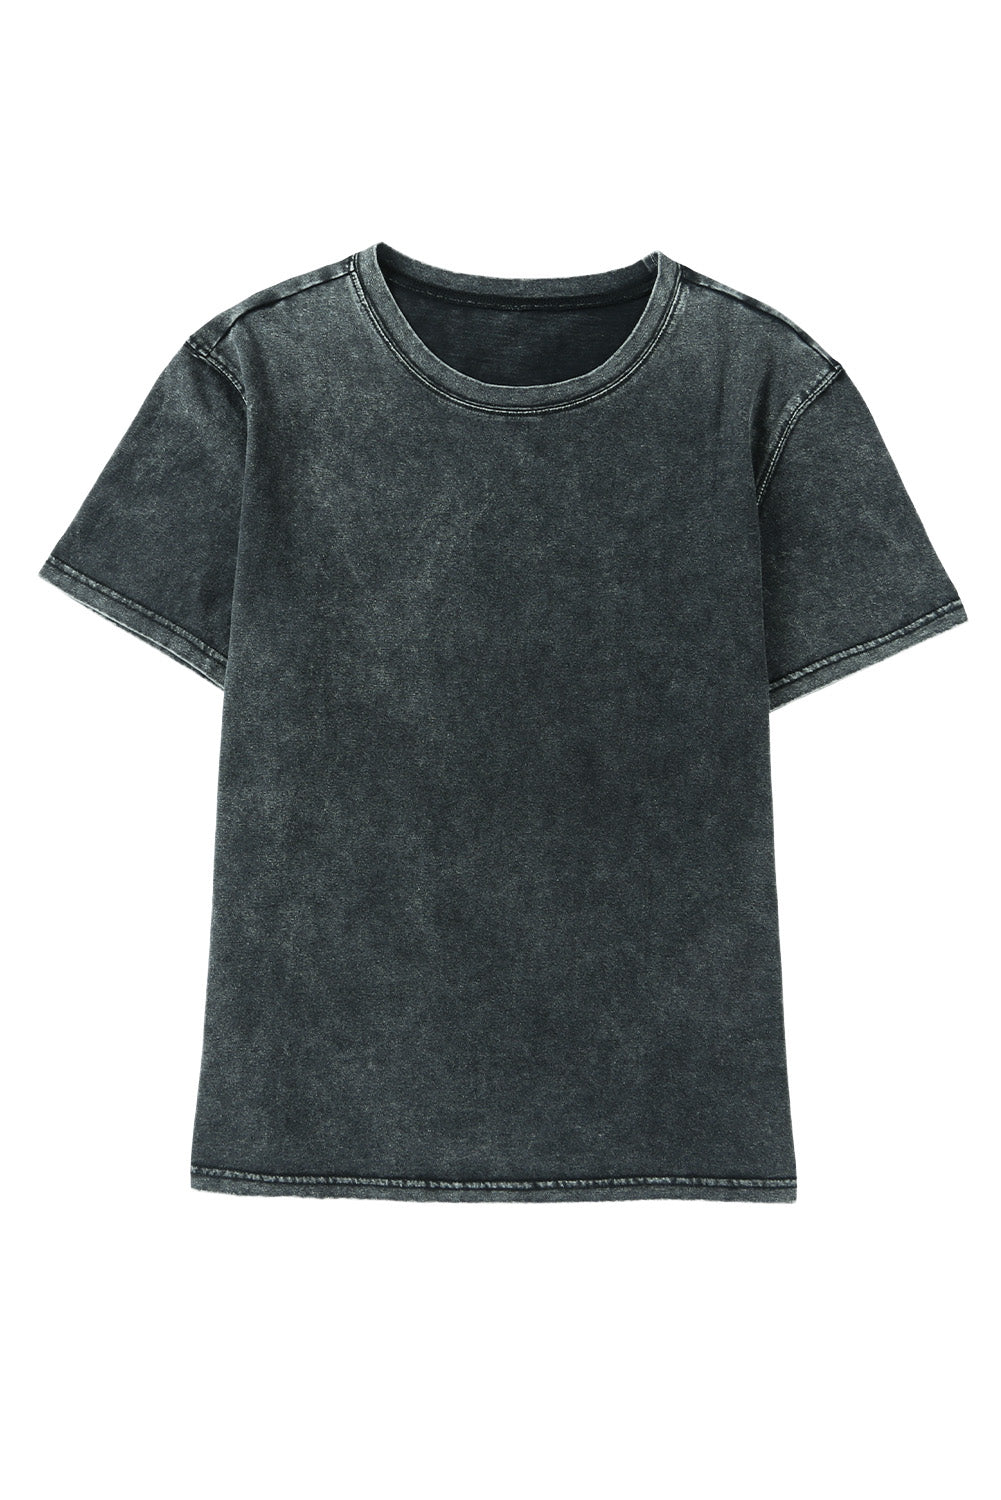 T-shirt casual a maniche corte lavata minerale nera